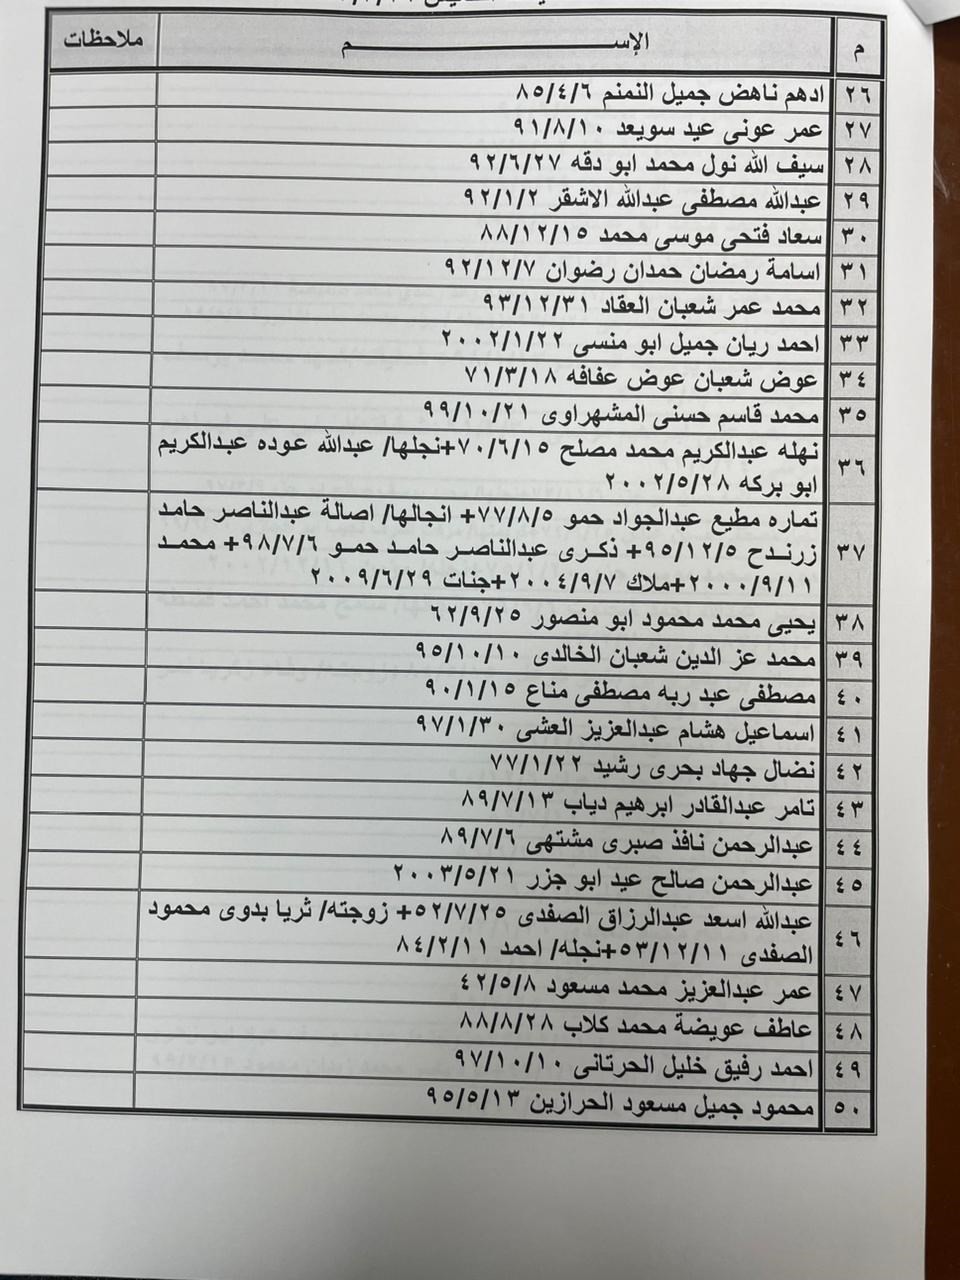 بالأسماء: داخلية غزة تنشر "كشف التنسيقات المصرية" للسفر الخميس 16 مارس 2023